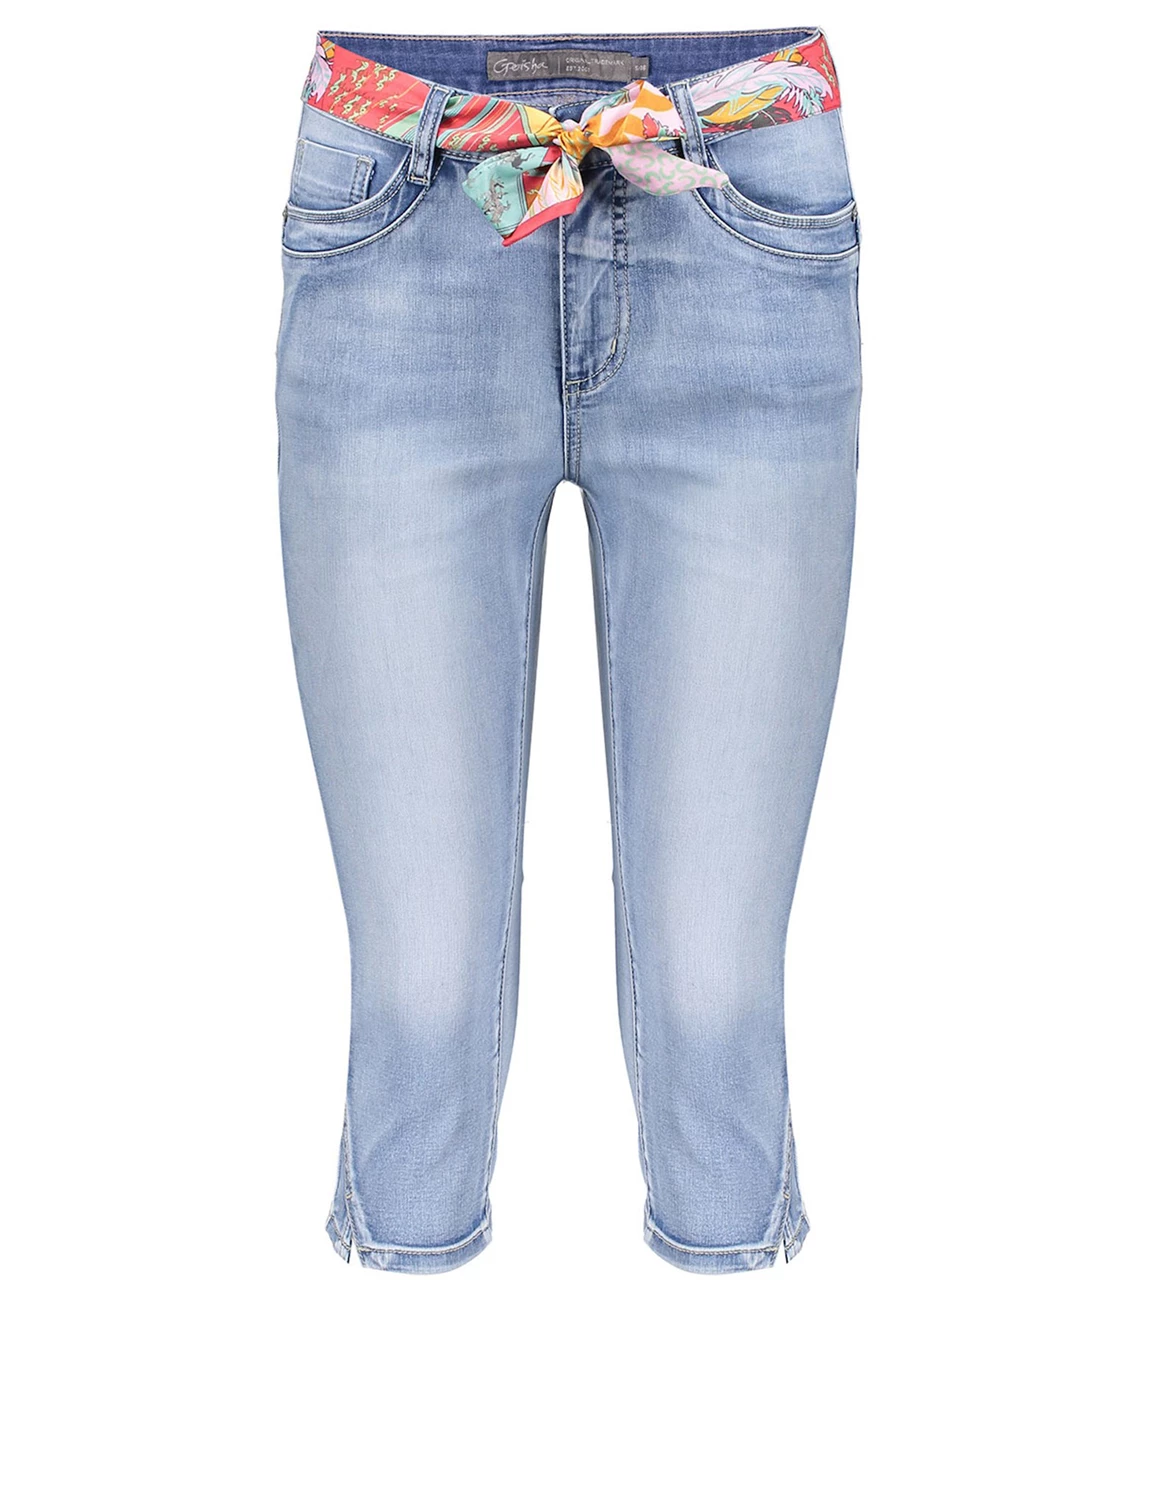 Geisha Jeans capri + belt blauw kopen bij Stone